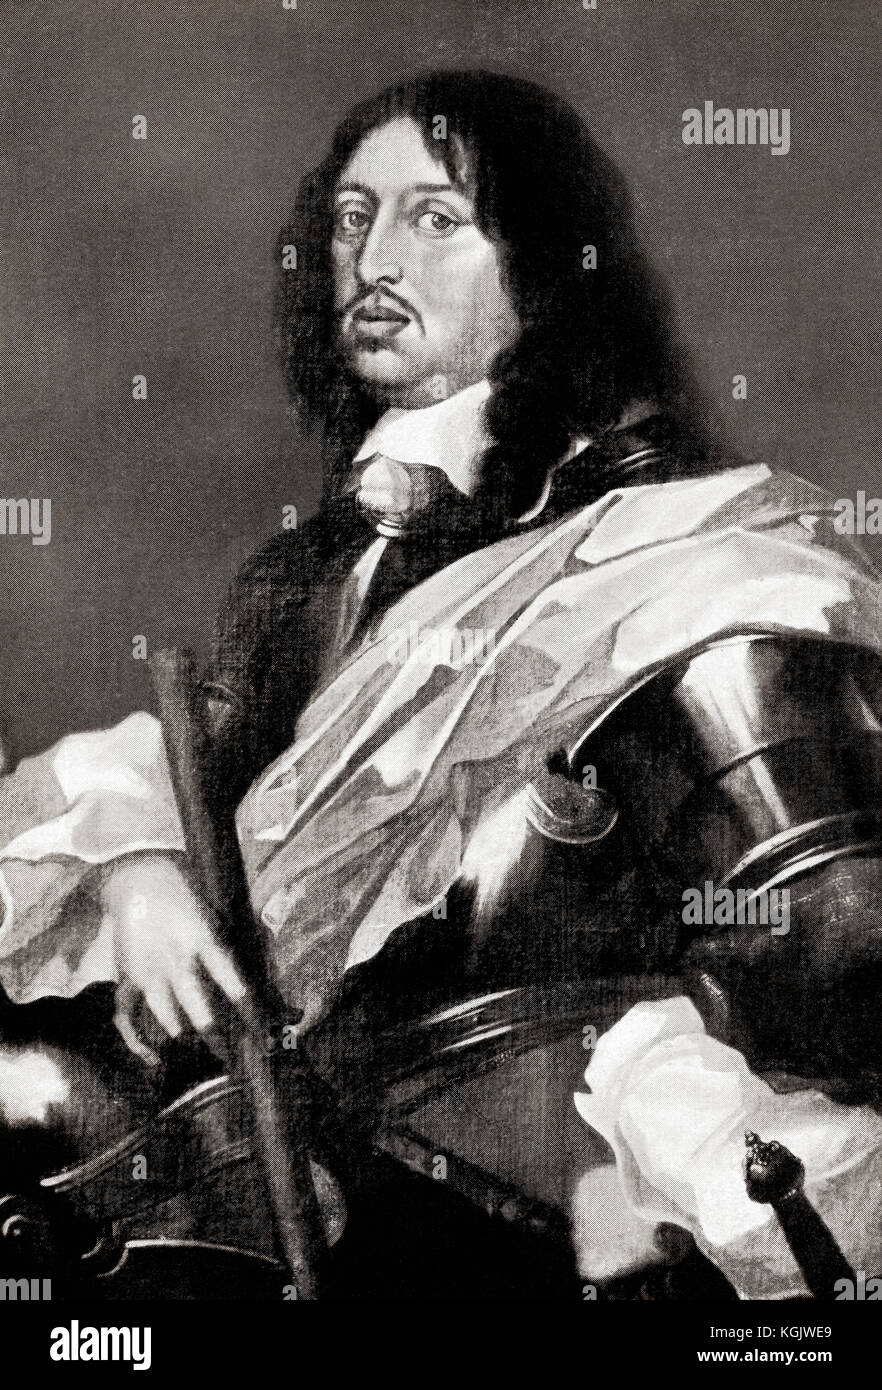 Karl X Gustav, alias Carl Gustav, 1622 - 1660. Dem König von Schweden. Aus der Hutchinson Geschichte der Nationen, veröffentlicht 1915. Stockfoto